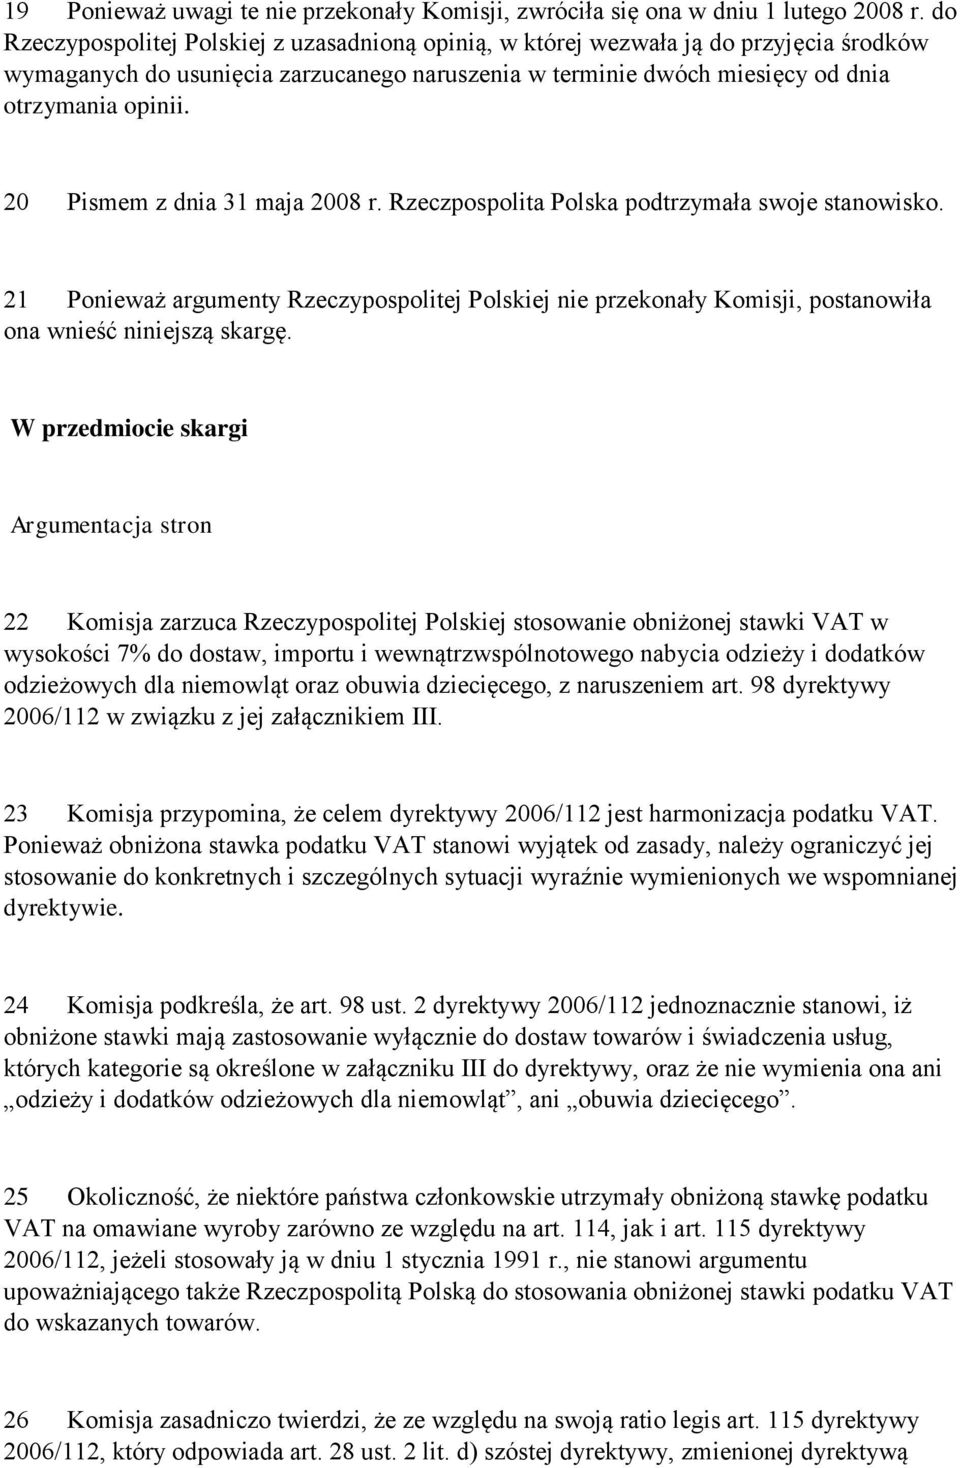 20 Pismem z dnia 31 maja 2008 r. Rzeczpospolita Polska podtrzymała swoje stanowisko. 21 Ponieważ argumenty Rzeczypospolitej Polskiej nie przekonały Komisji, postanowiła ona wnieść niniejszą skargę.